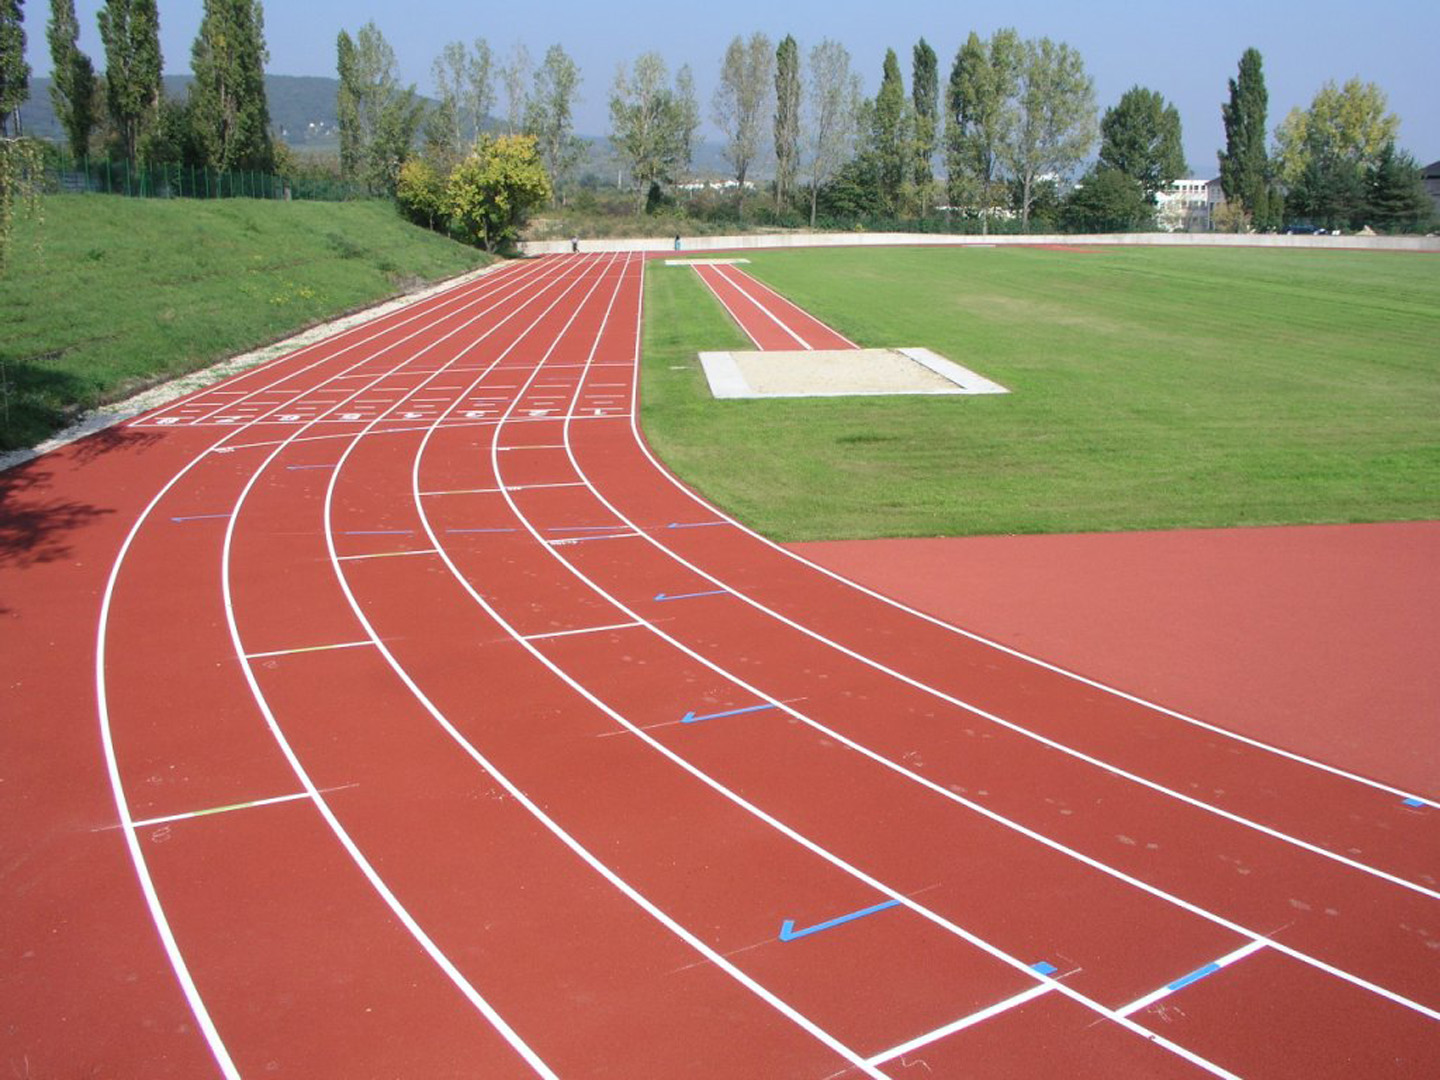 Стадион 400 м. Беговая легкоатлетическая дорожка 110 м. Беговая дорожка на 400м проект. Беговая дорожка на 100м. Дорожка 400м легкая атлетика.